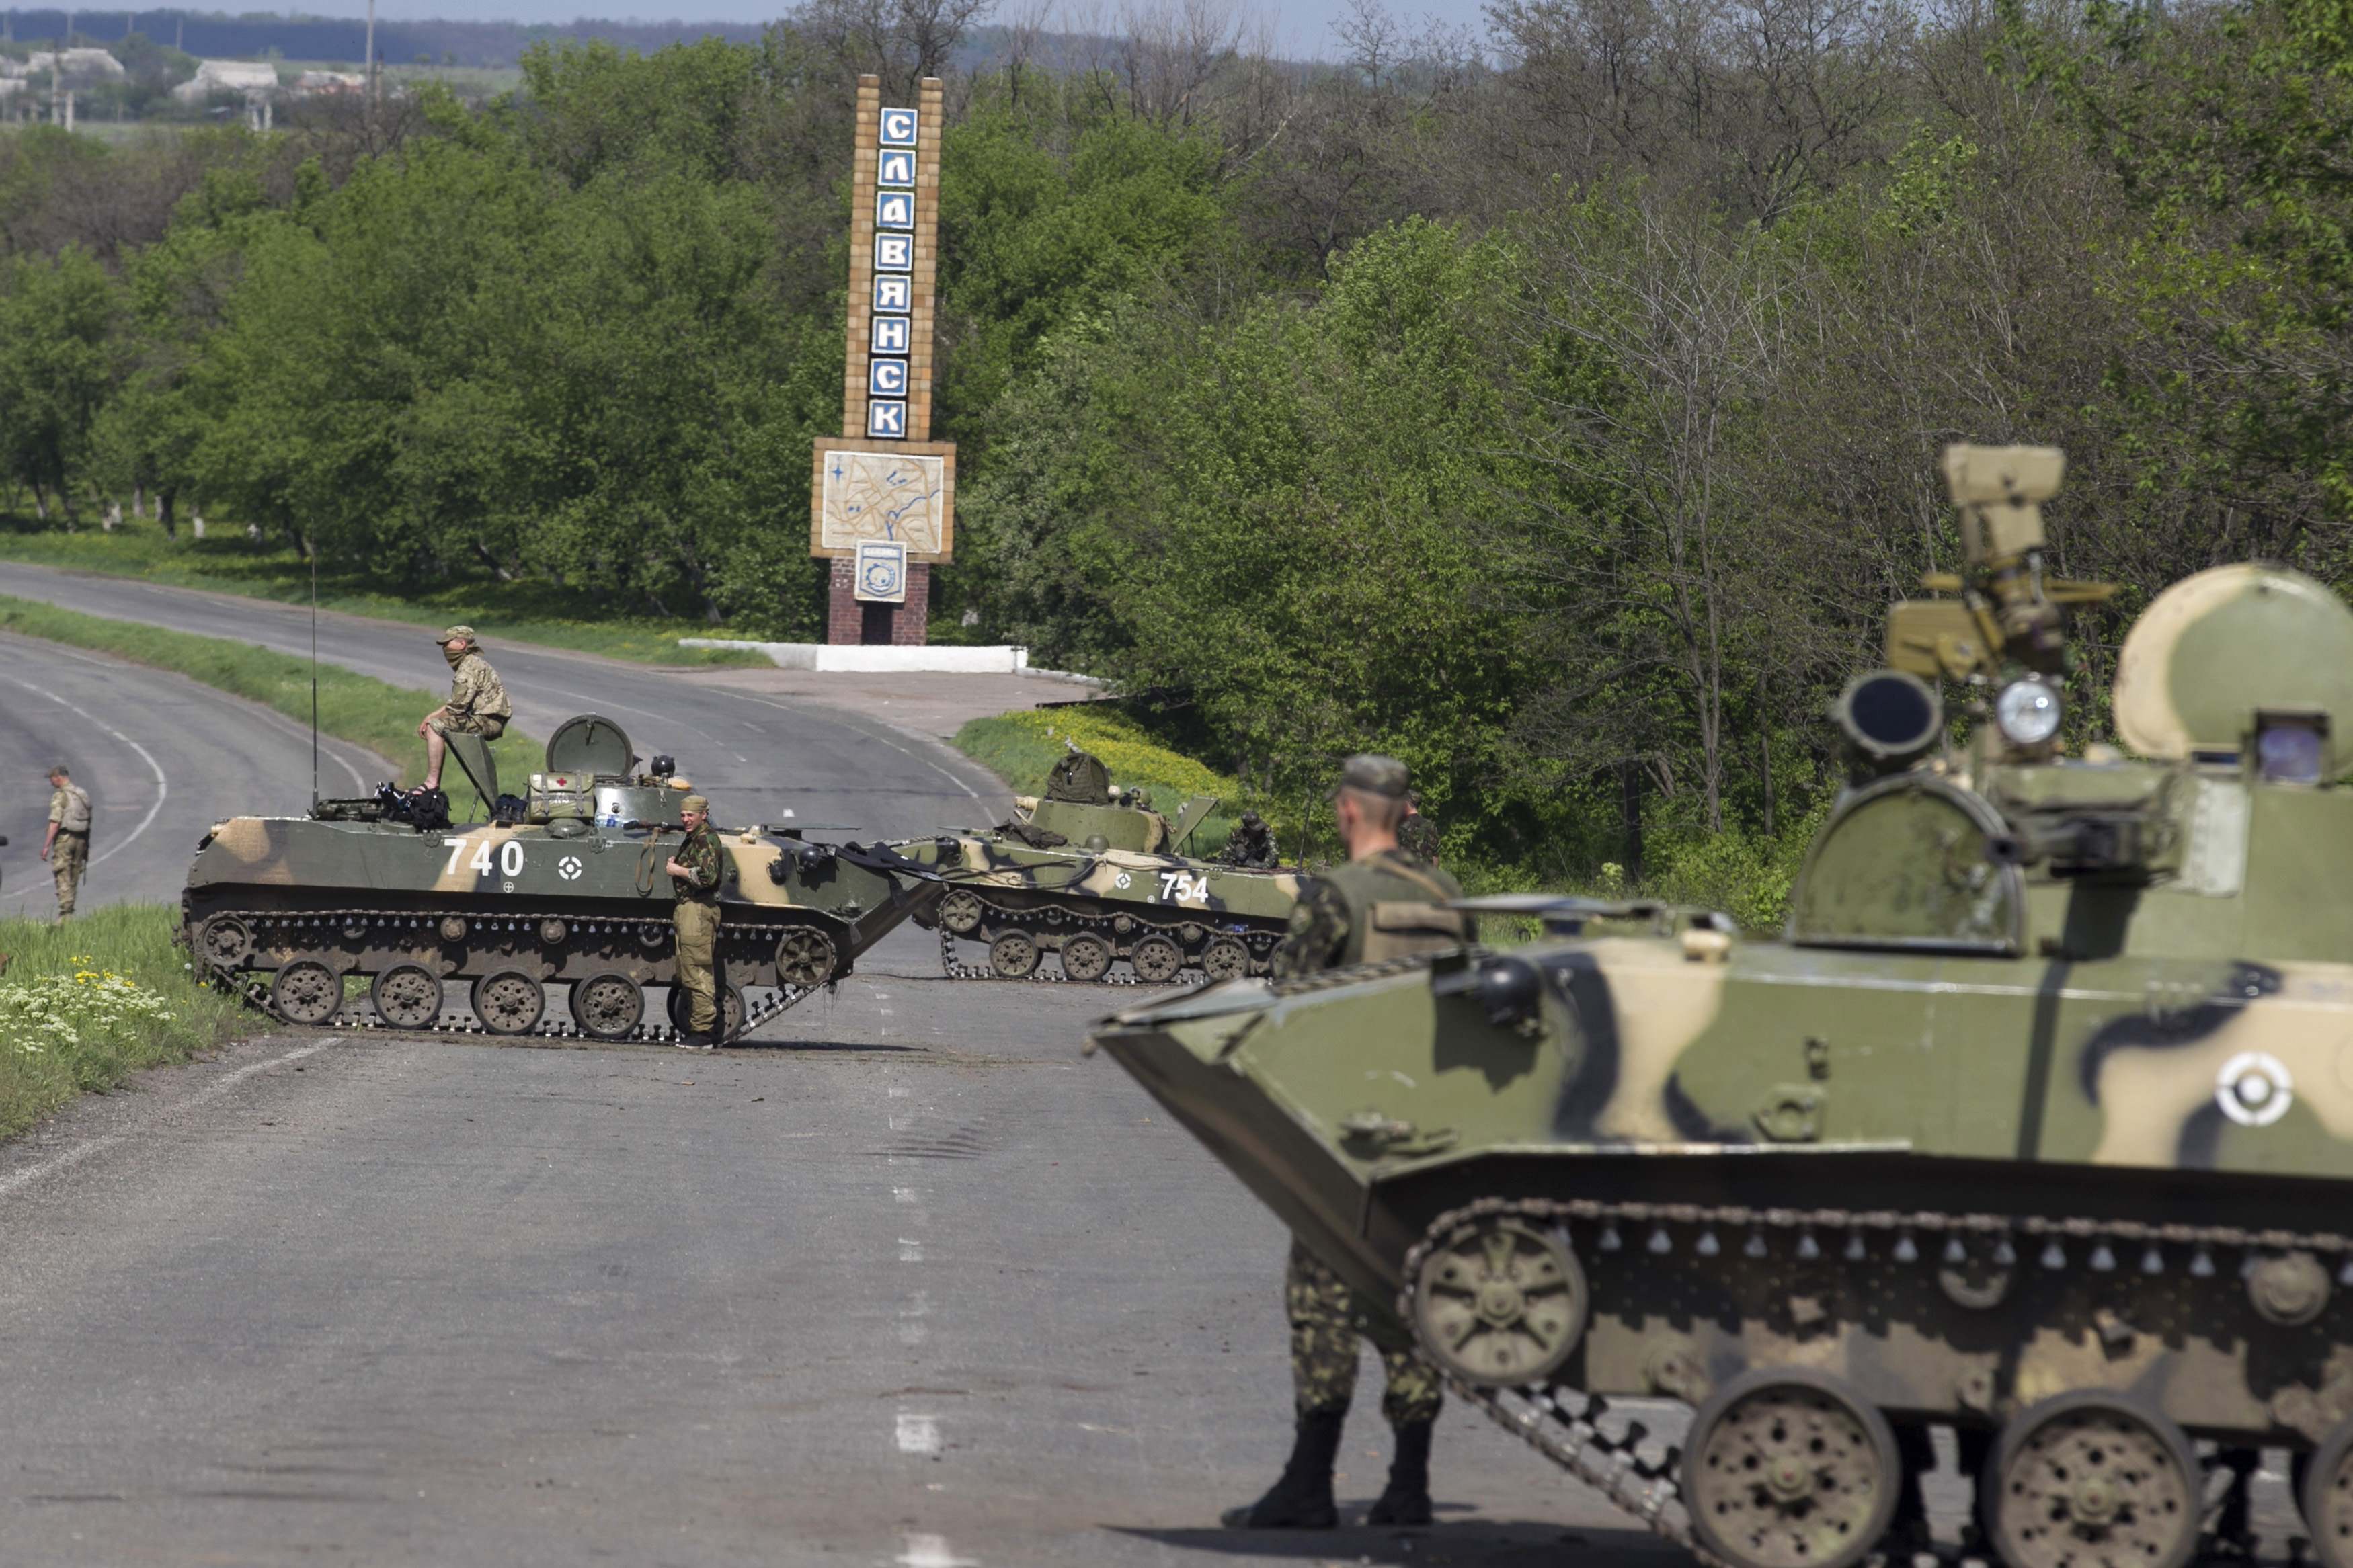 АТО:  Потери террористов по отношению к украинским силовикам составляют 10 к 1